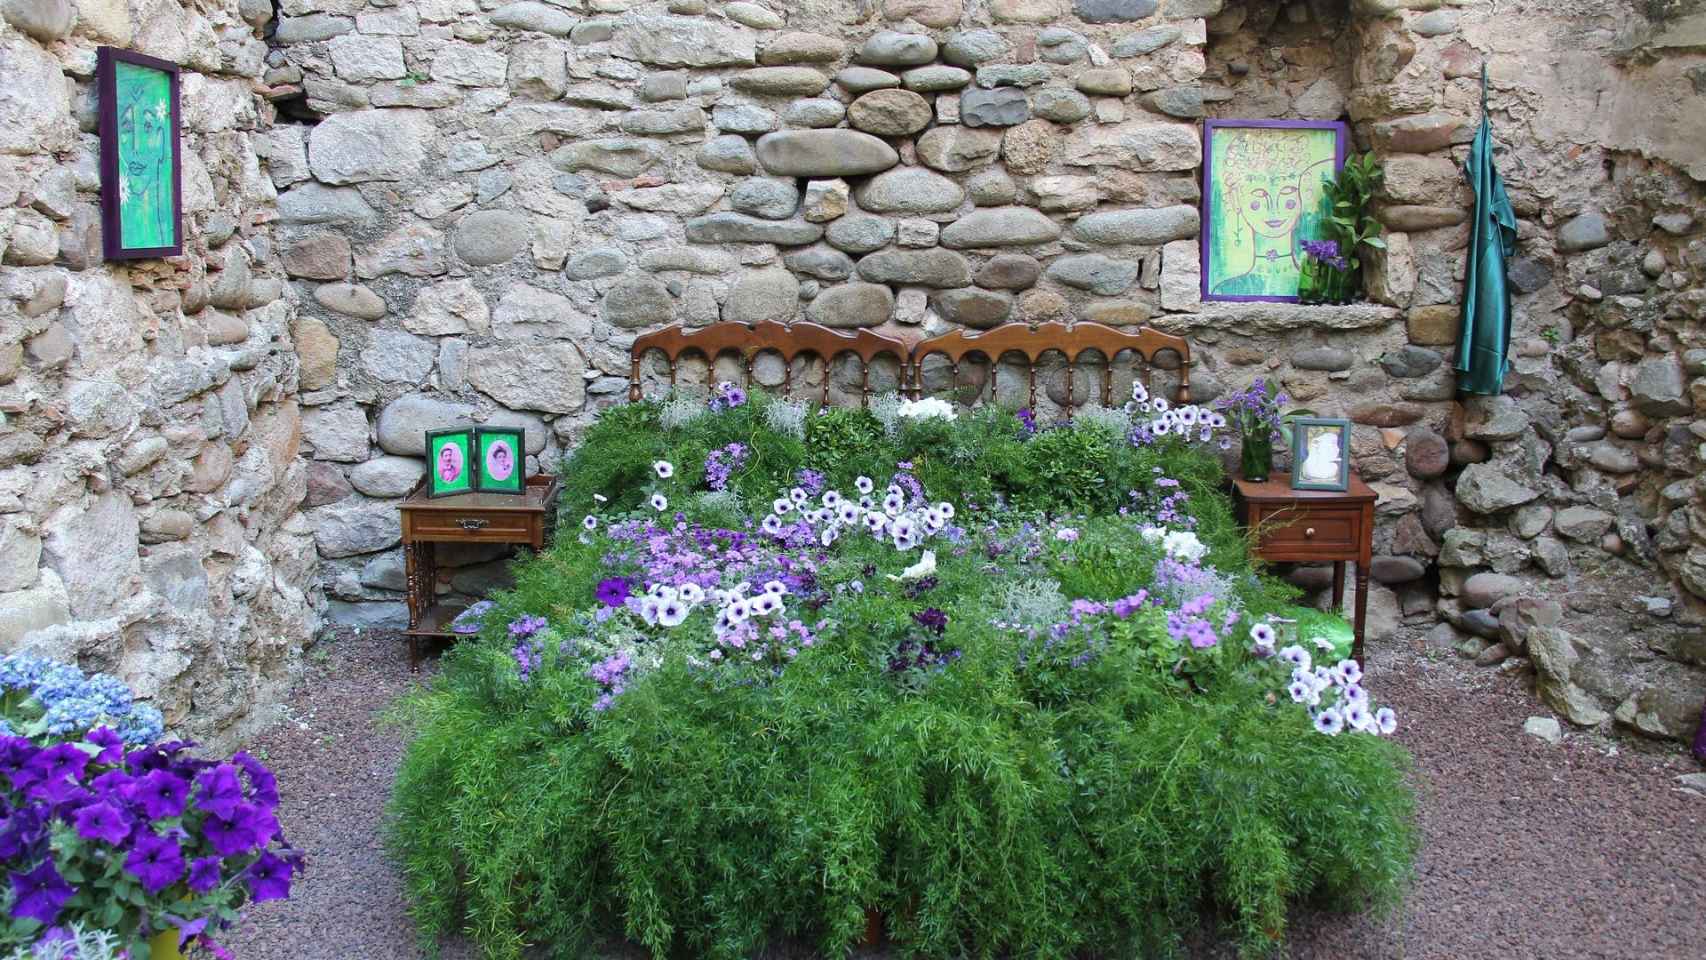 Una cama de plantas, hierbas y flores / CG